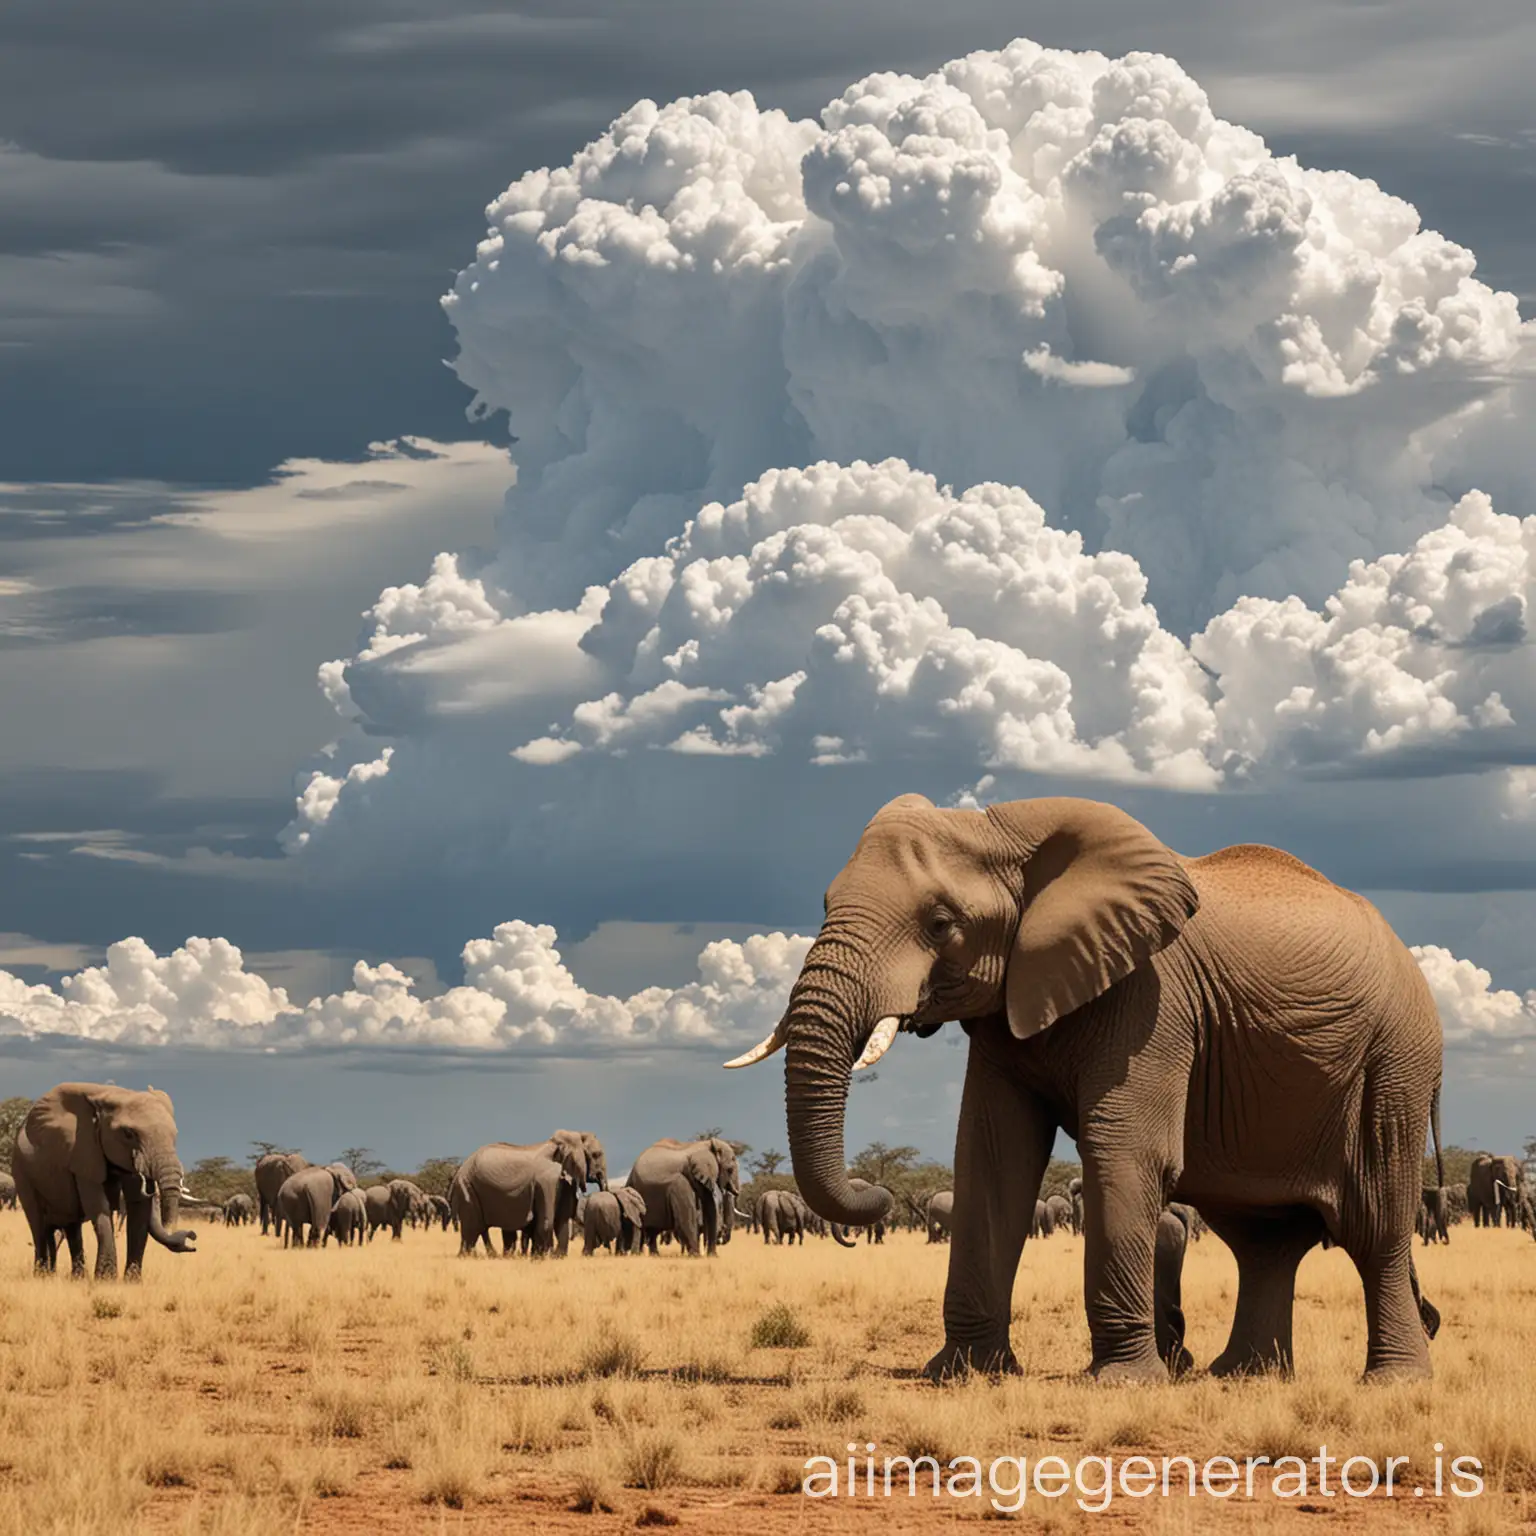 Die durchschnittliche Wolke wiegt ungefähr so viel wie 100 Elefanten.